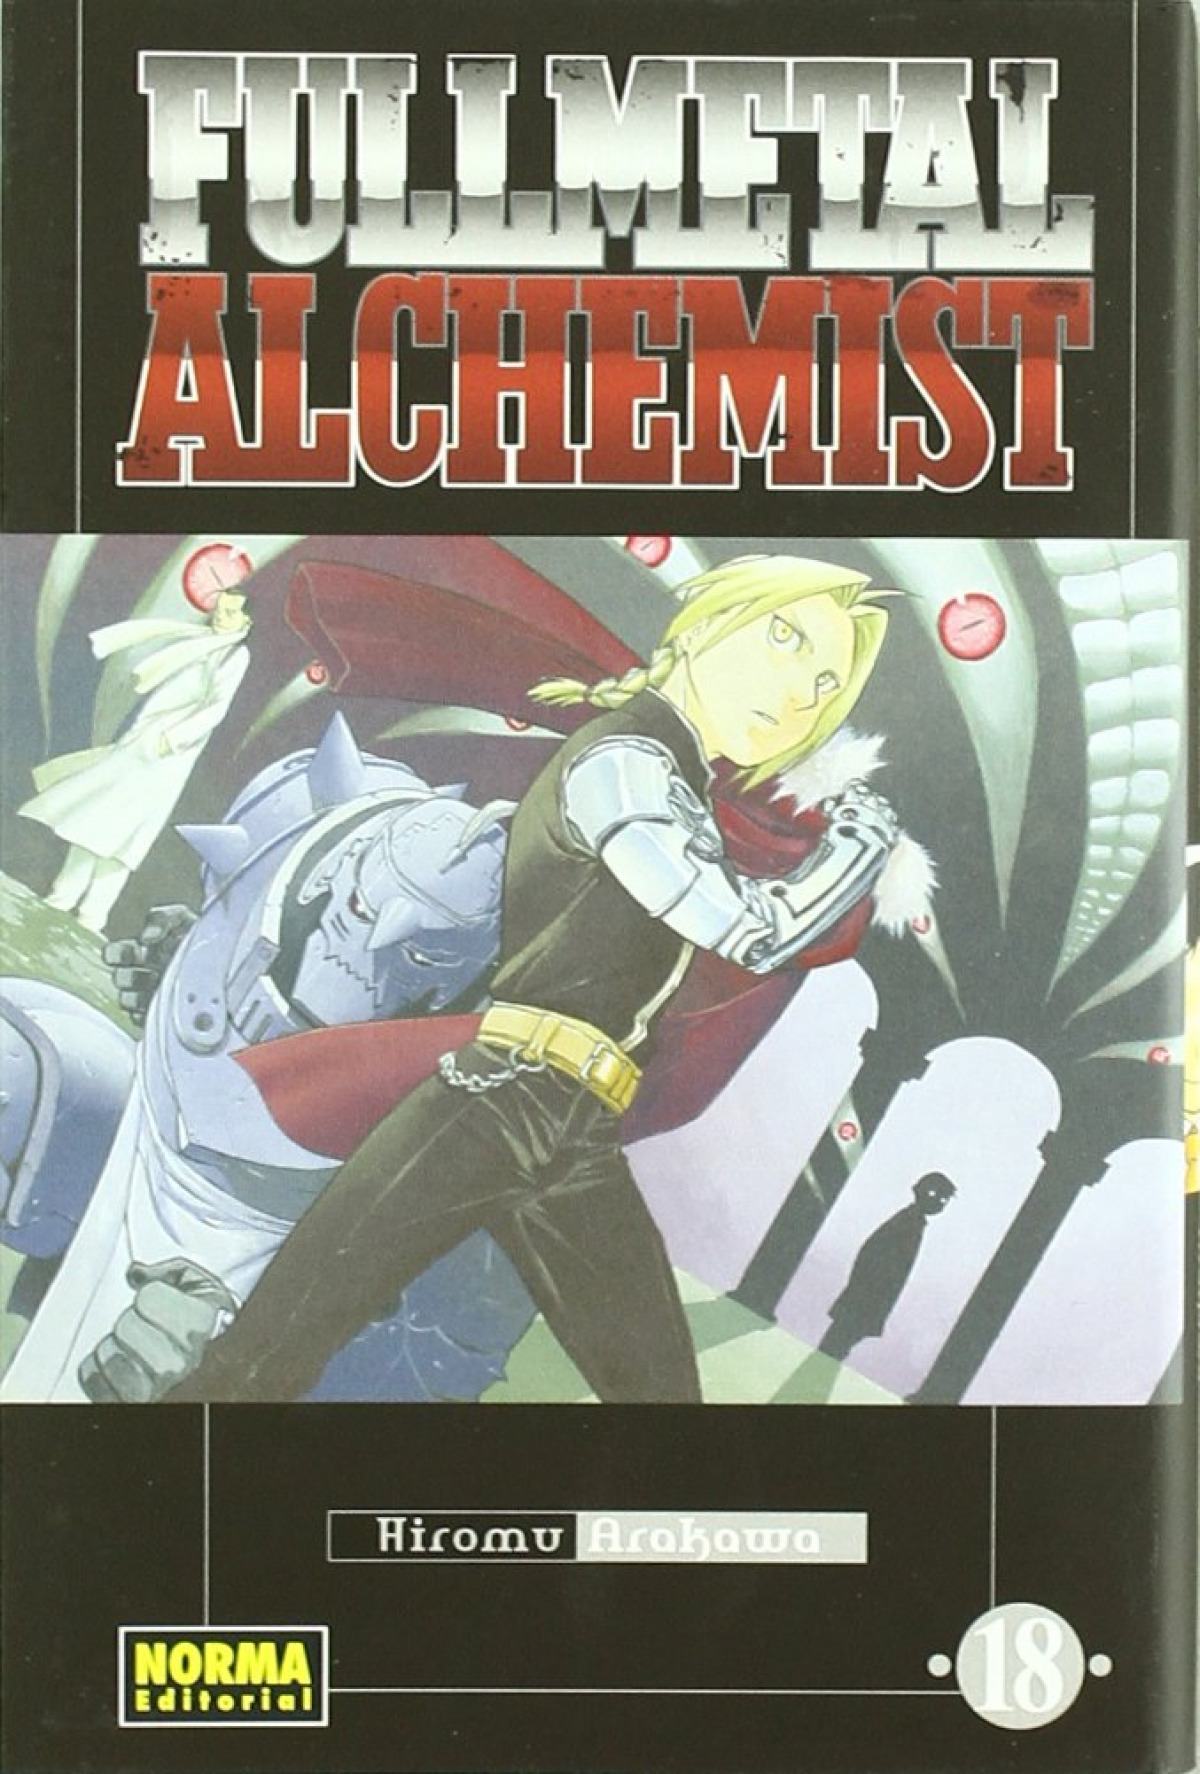 Fullmetal alchemist 18 - Arakawa, Hiromu